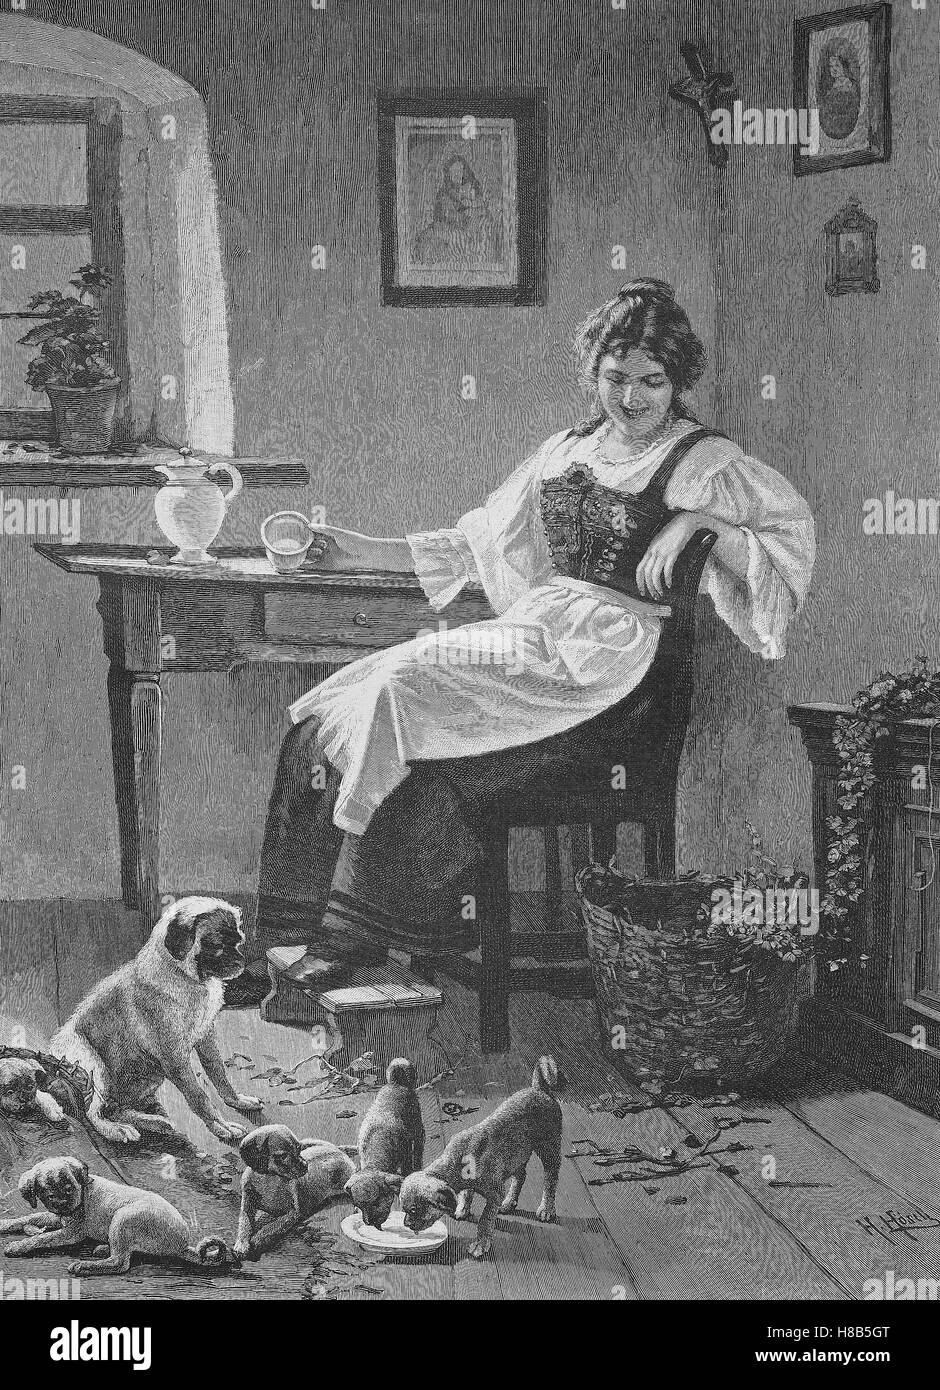 Le chien domestique a beaucoup de chiots, femme au foyer pour le chien a donné du lait, gravure sur bois de 1892 Banque D'Images